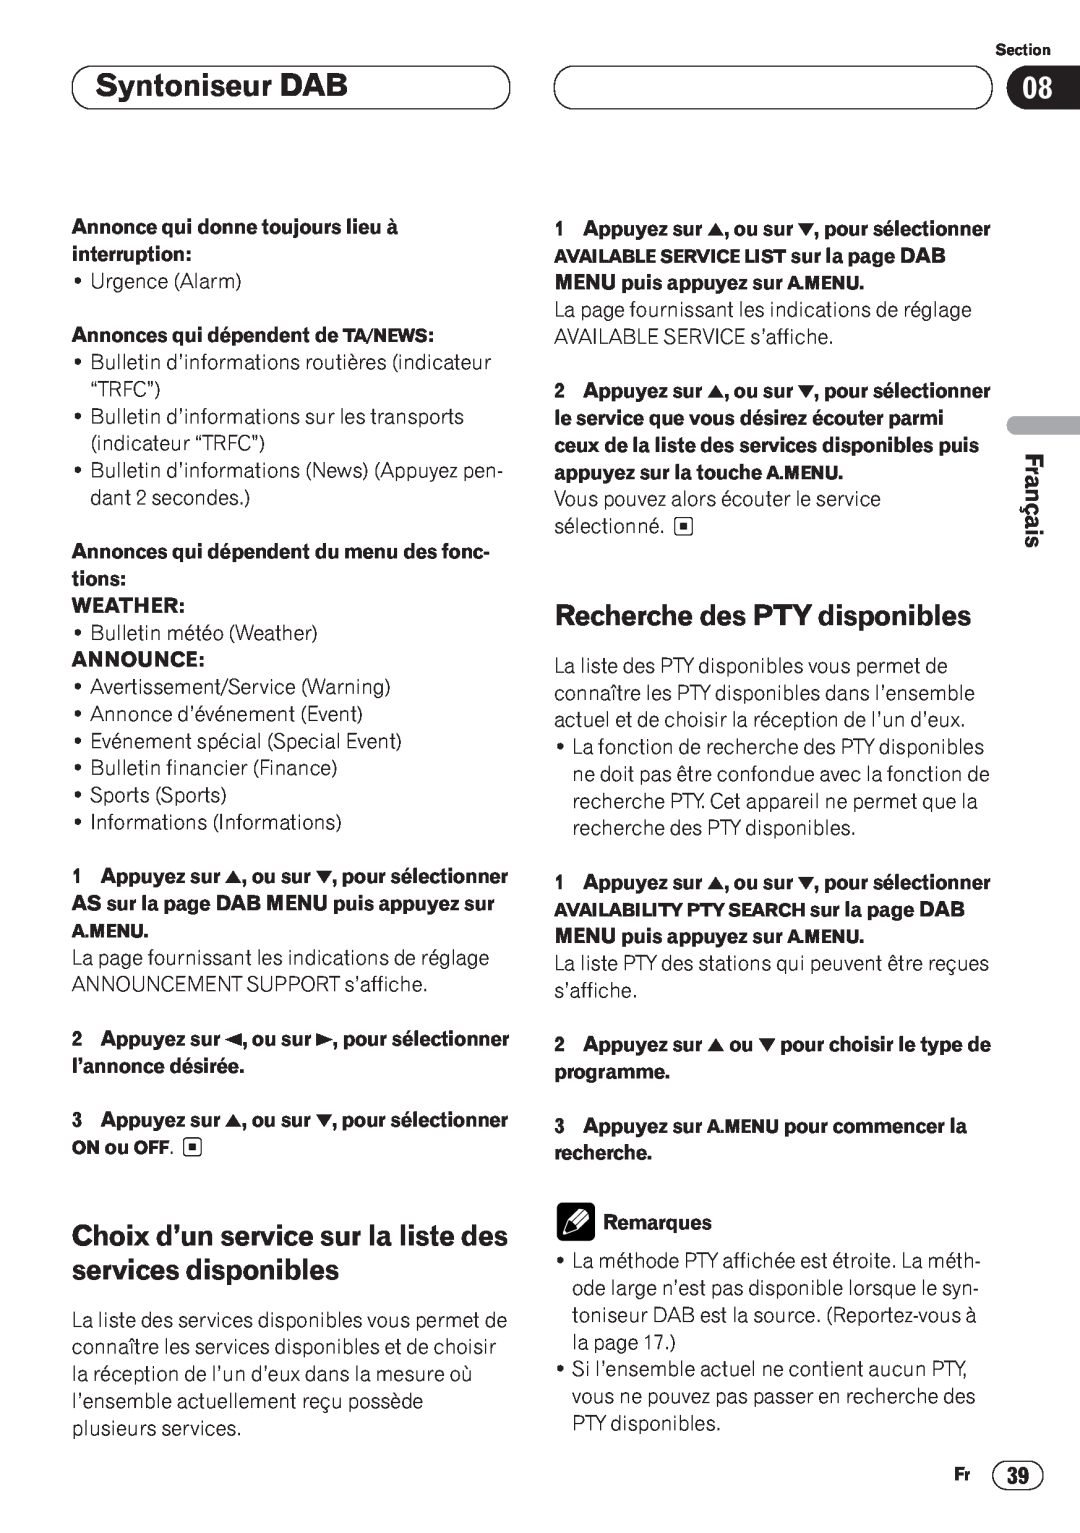 Pioneer AVH-P6400CD Syntoniseur DAB, Choix d’un service sur la liste des services disponibles, Français, Announce 